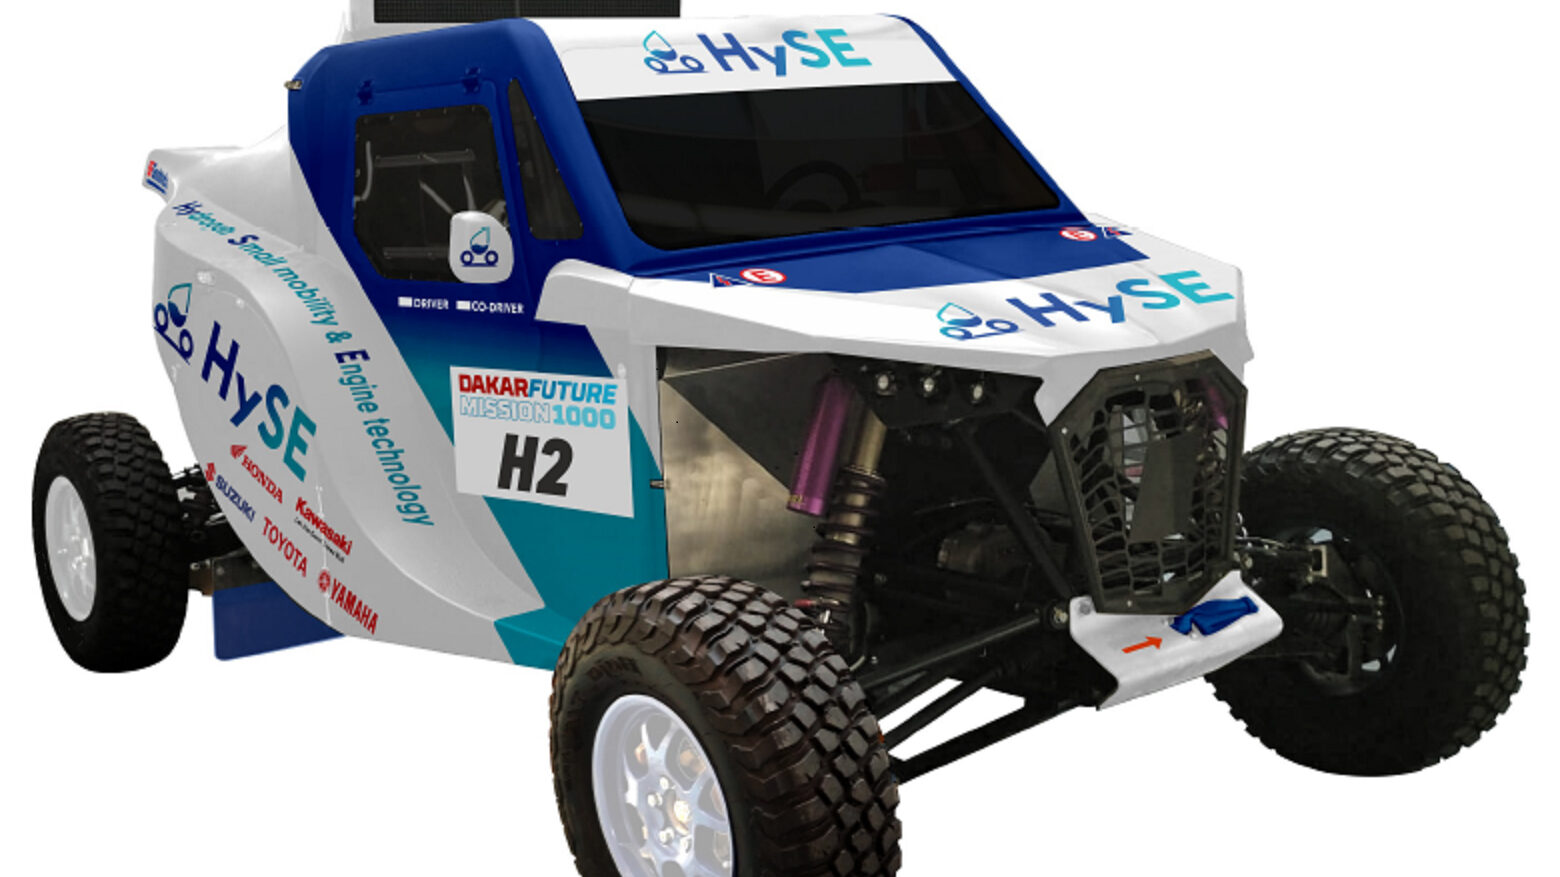 Auf in die Wüste 
Toyota will im Januar mit einem Buggy an der Rallye Dakar teilnehmen, das von einem mit Wasserstoff gefütterten Motorradmotor mit 998 ccm Hubraum angetrieben wird. Der HySE X1 soll beweisen, dass nicht der Verbrennungsmotor das Problem ist, sondern der Kraftstoff. Foto: Toyota